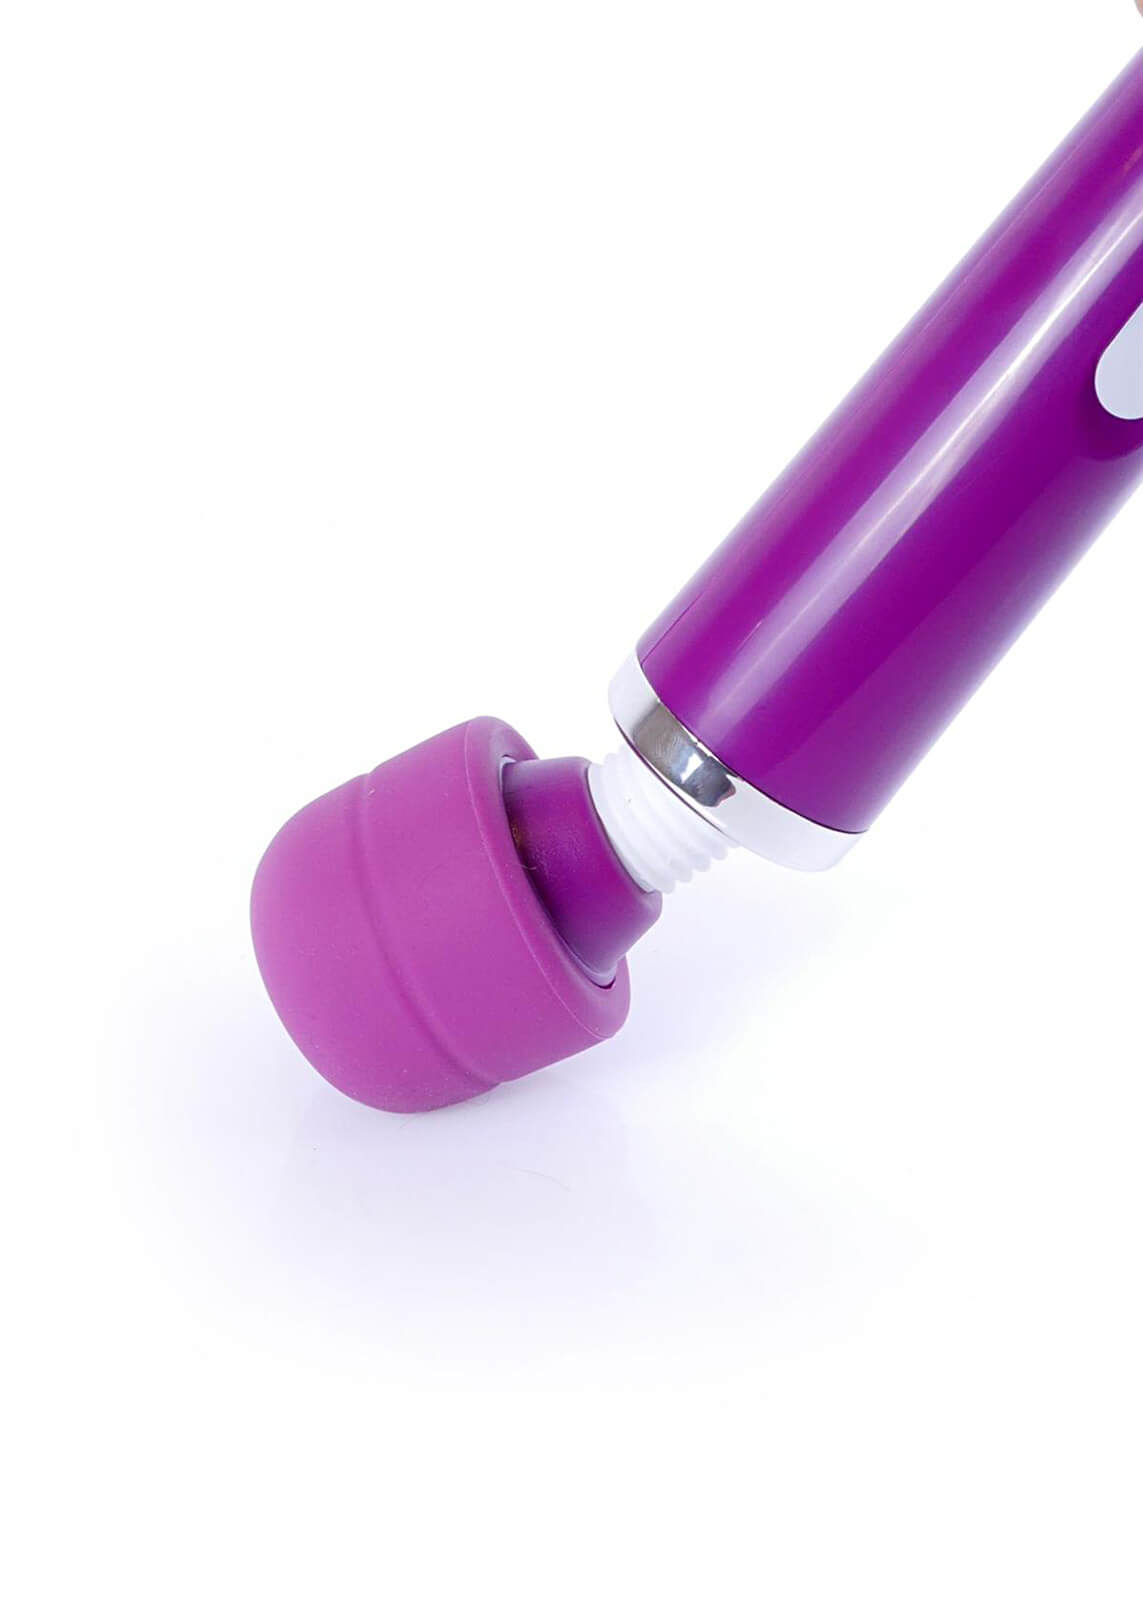 Magic Massager Wand USB (Purple)